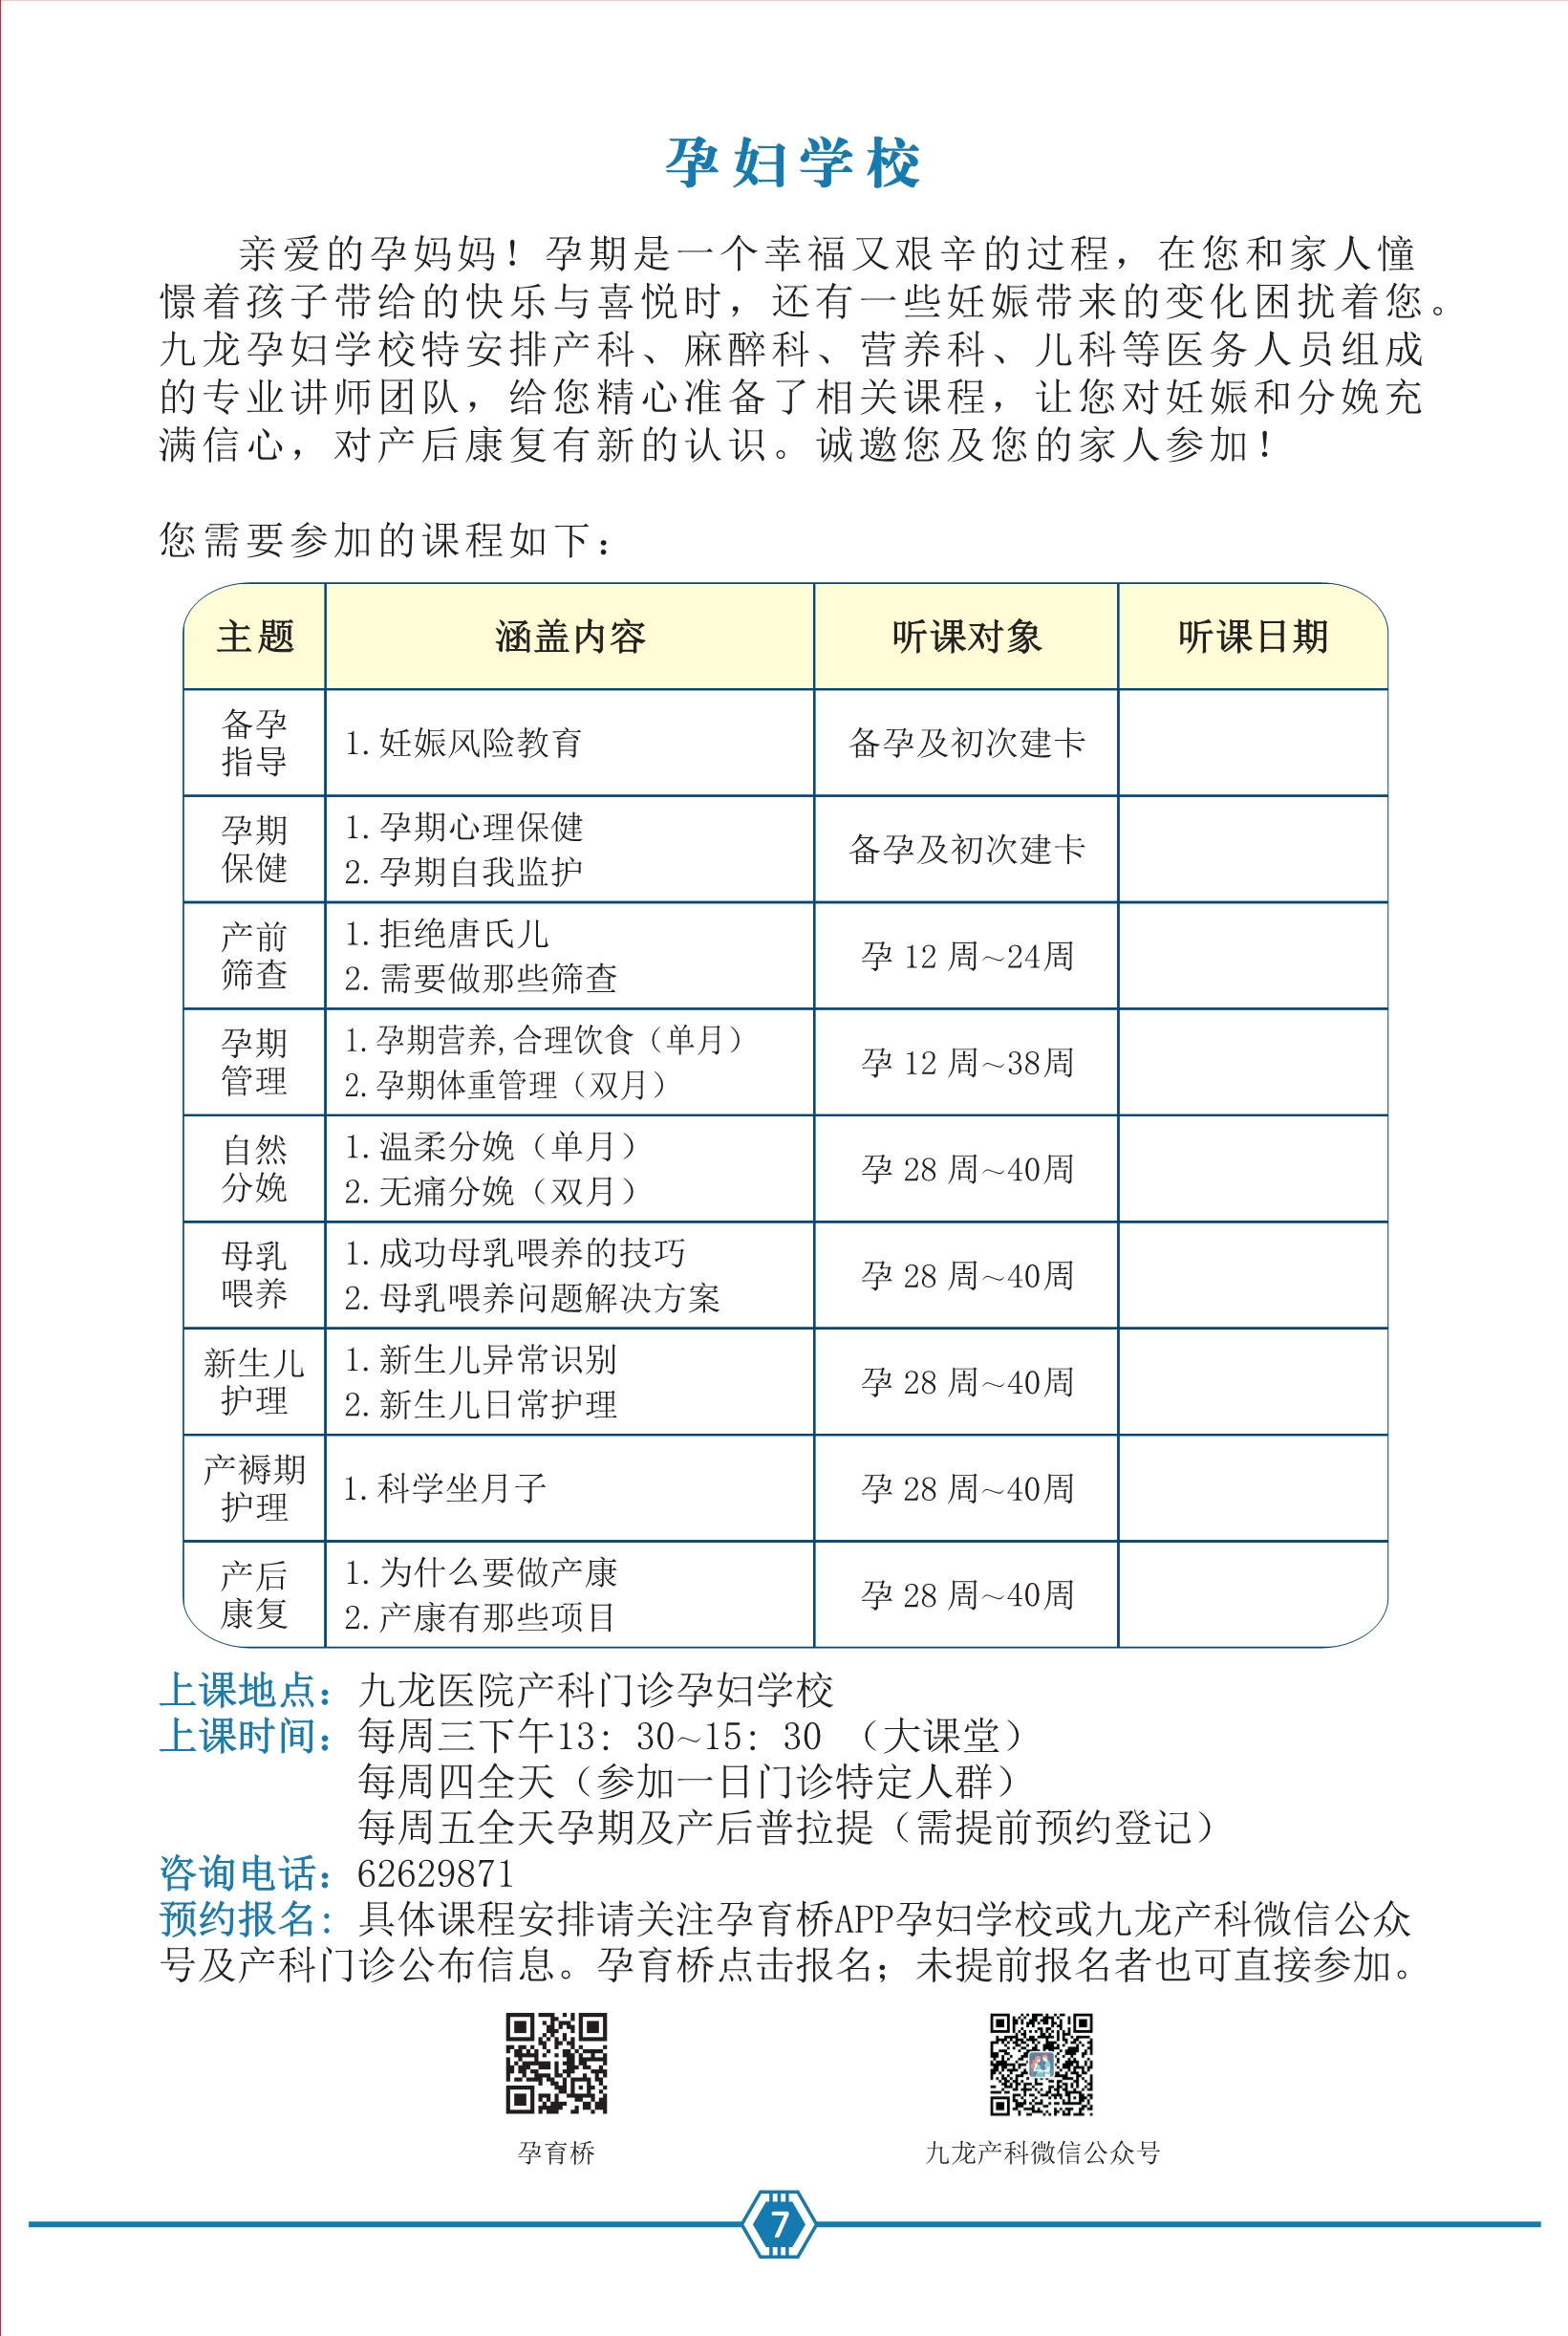 九龙医院产检专用手册2021.06.29--去框_8.jpg